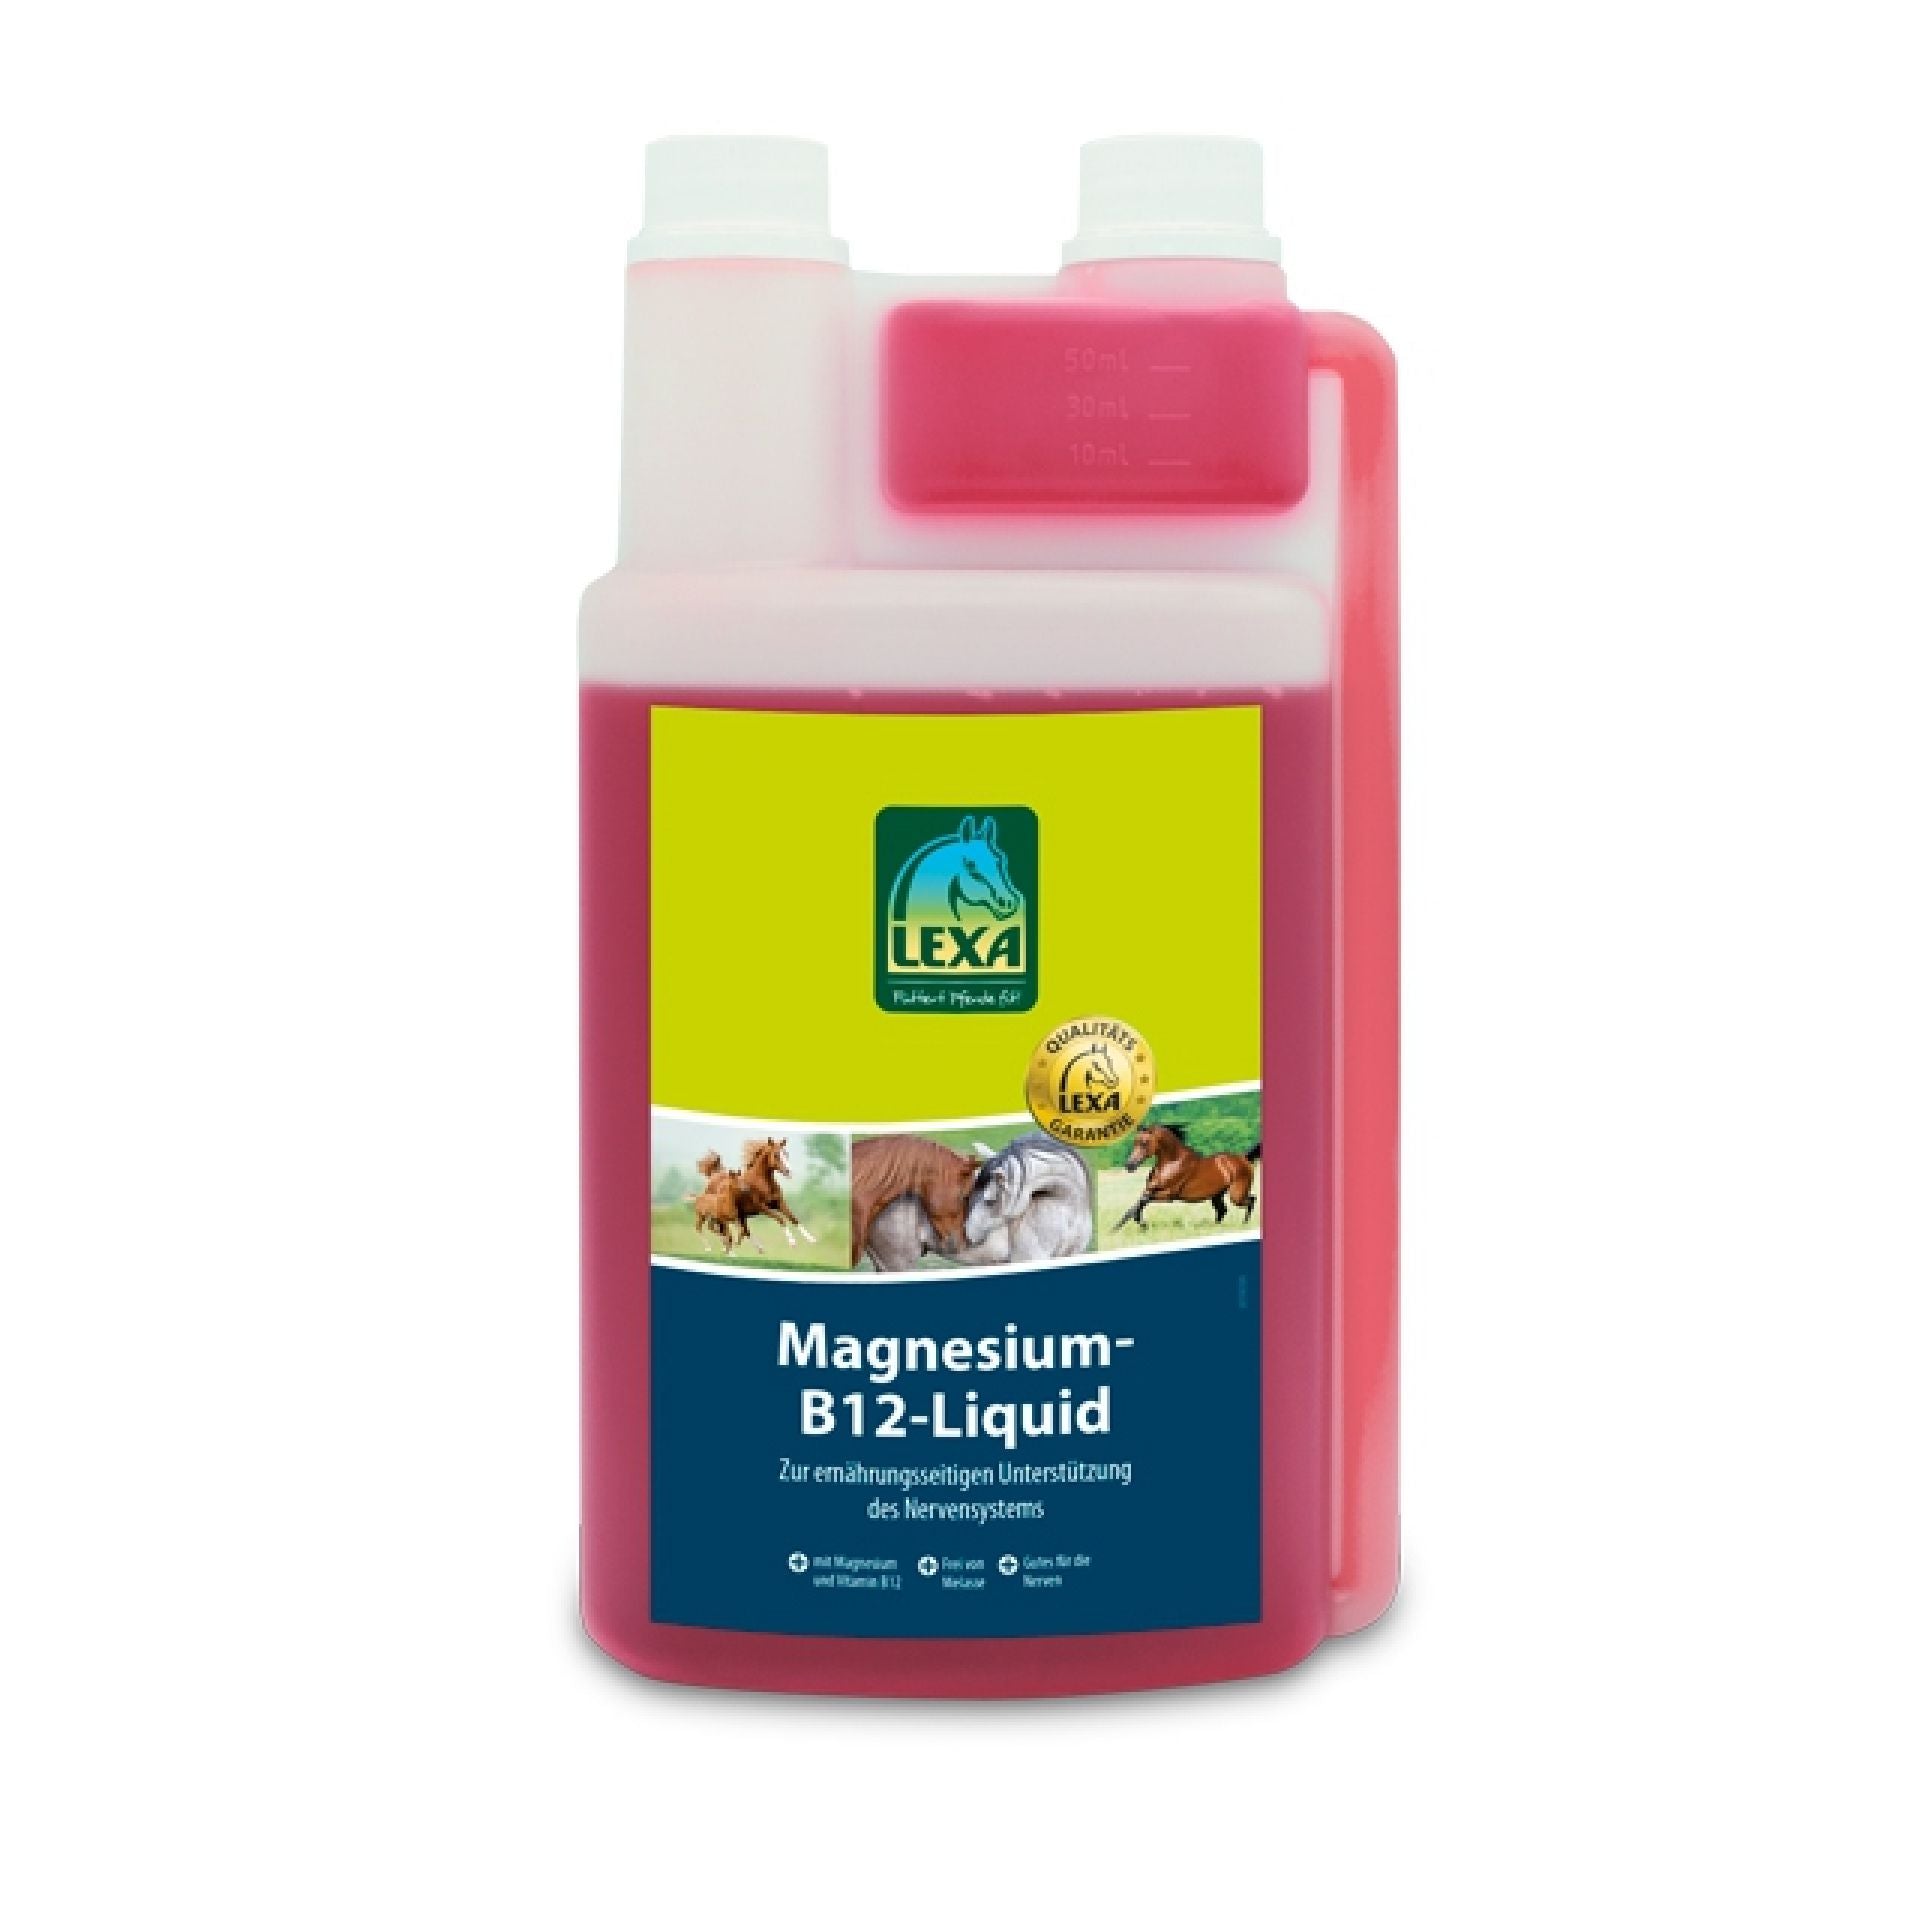 Magnesium-B12-Liquid 1 l